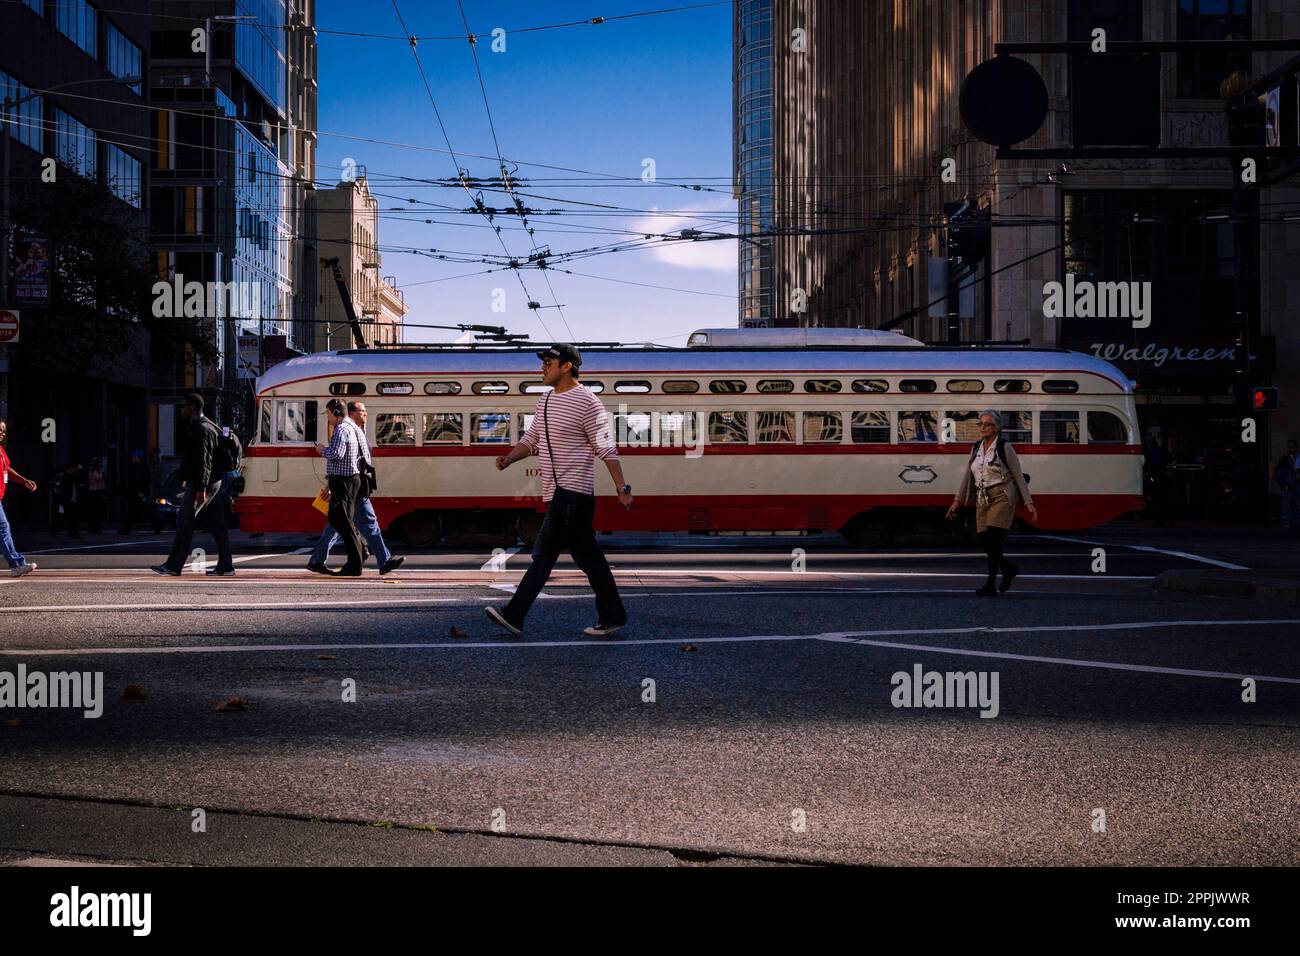 San Francisco, Kalifornien, USA, November 2013: Menschen, die die Straßen von San Francisco durchqueren, klassische Straßenbahn im Hintergrund, am blauen Himmel. Stockfoto